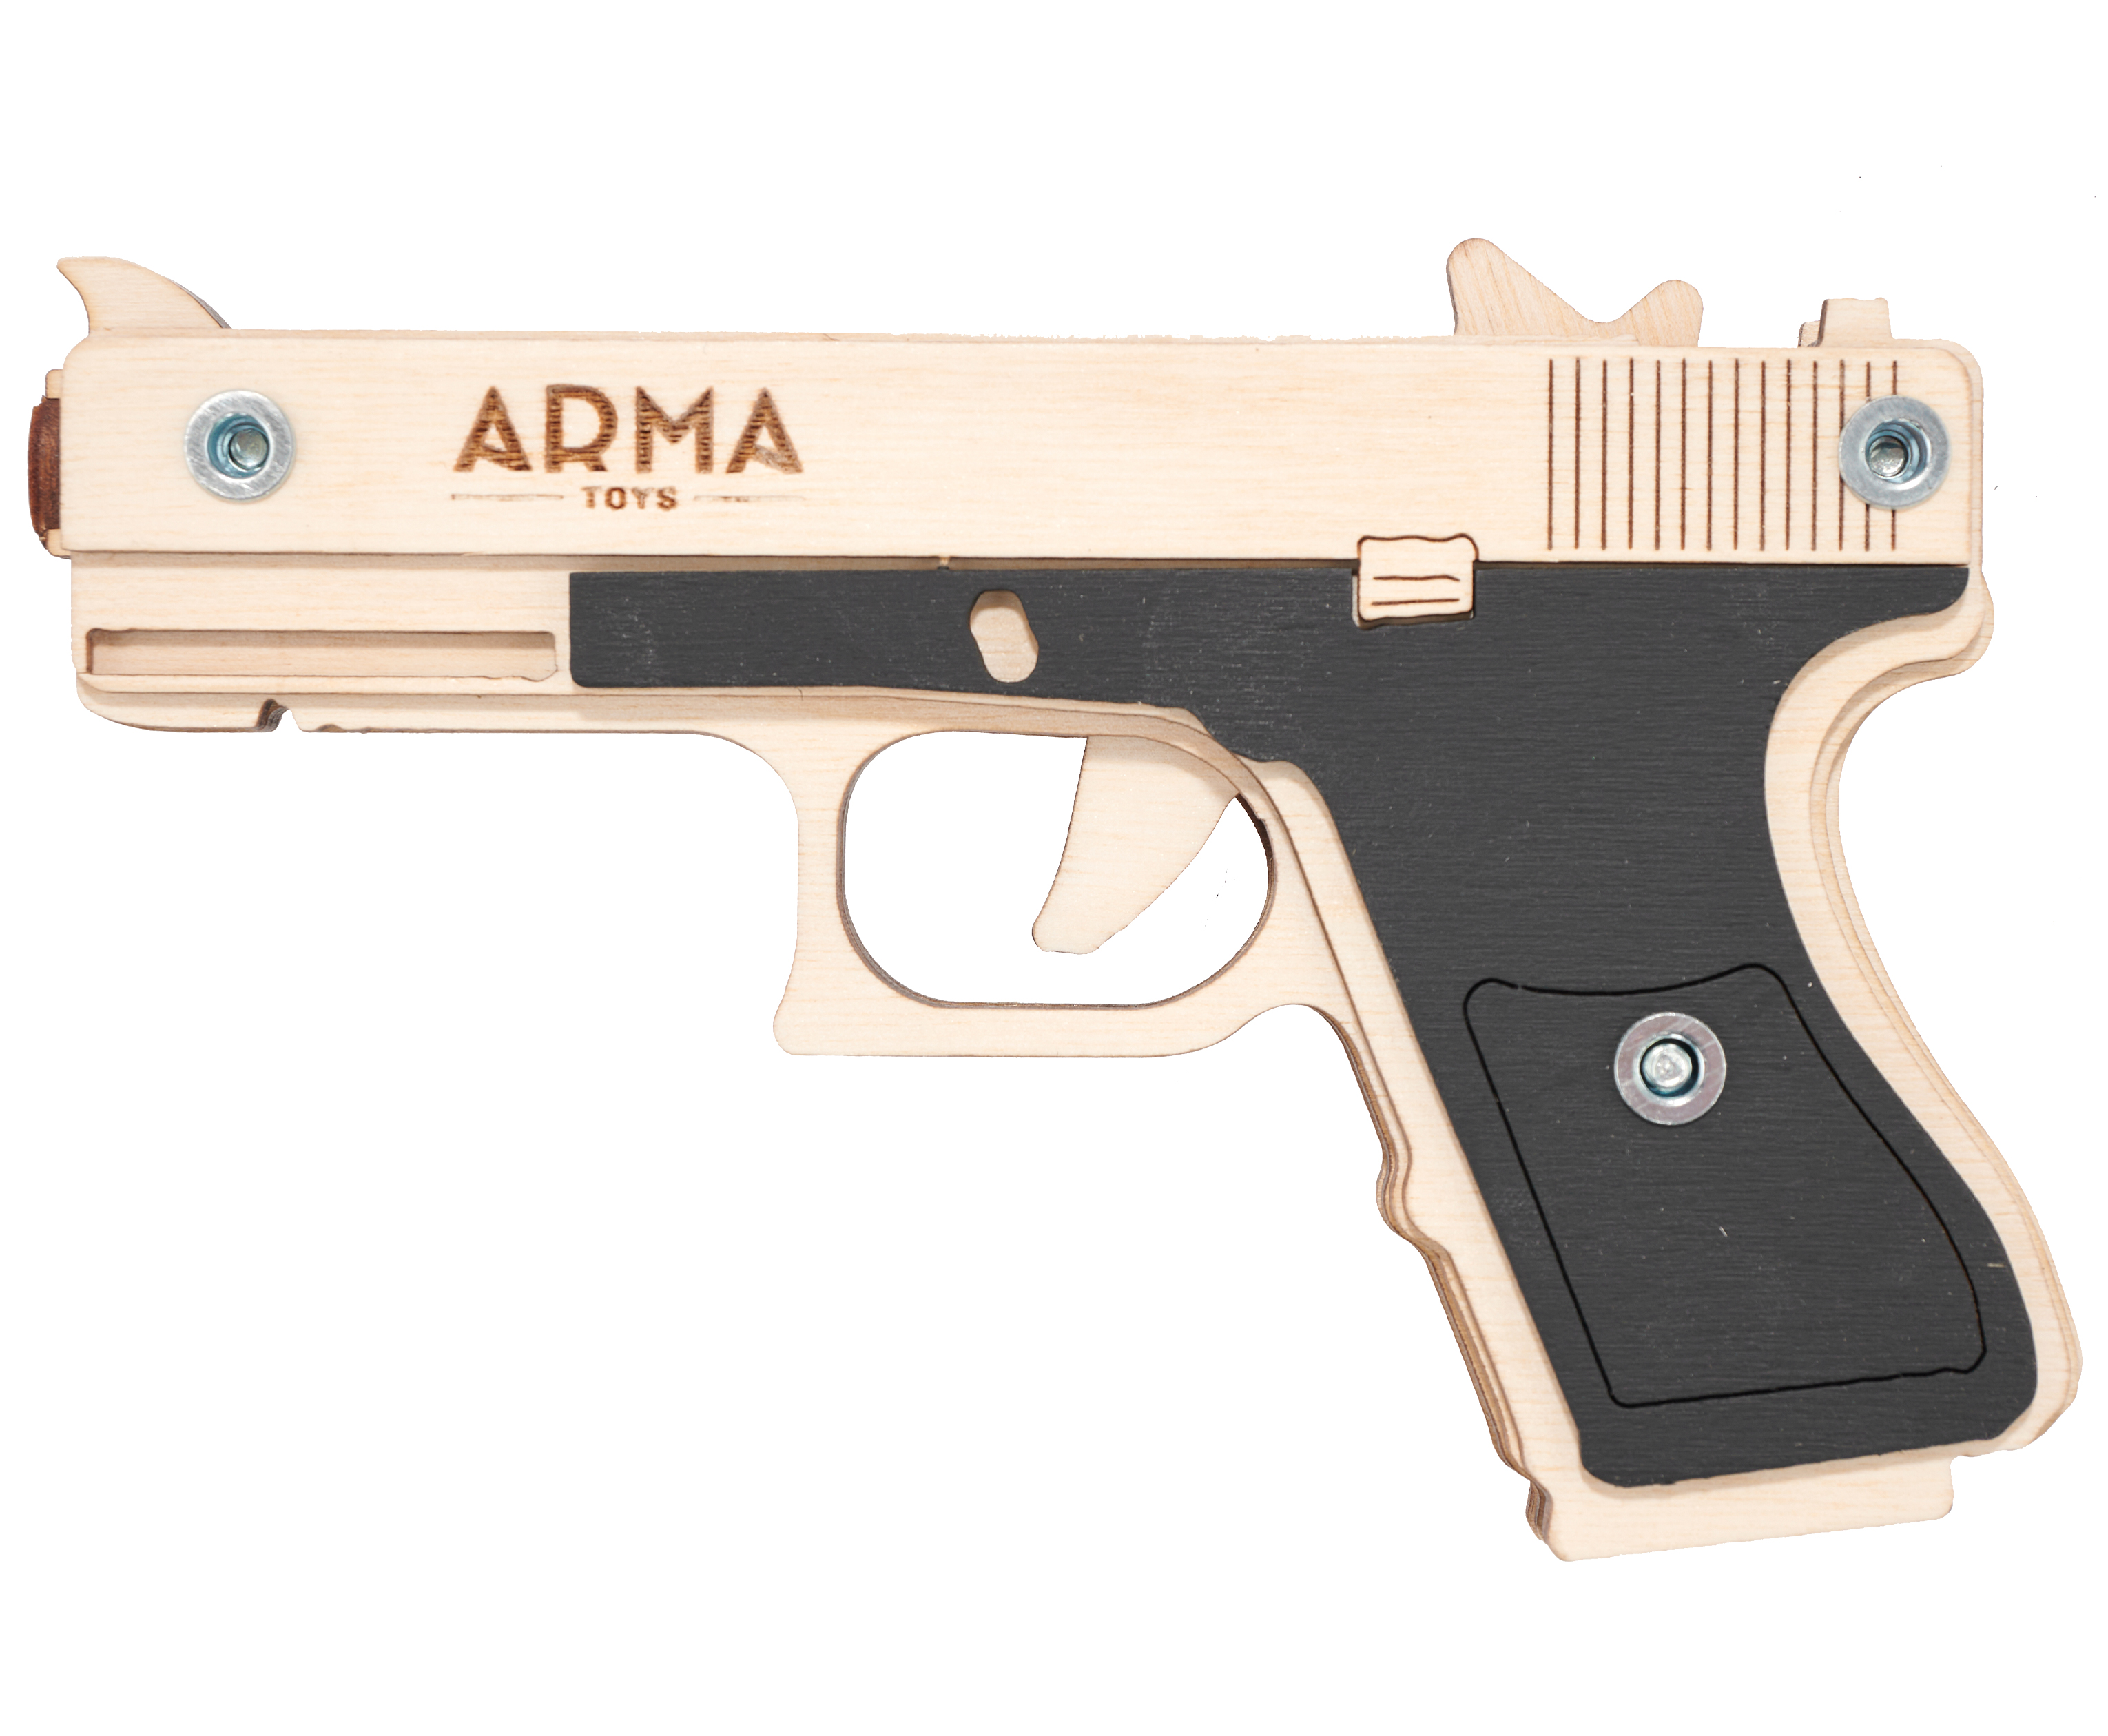 Резинкострел игрушечный Arma toys пистолет Glock Light макет, Глок 26, AT027, окрашенный спецназ полиции 2 arma toys снайперская винтовка awp и пистолет “глок” из дерева